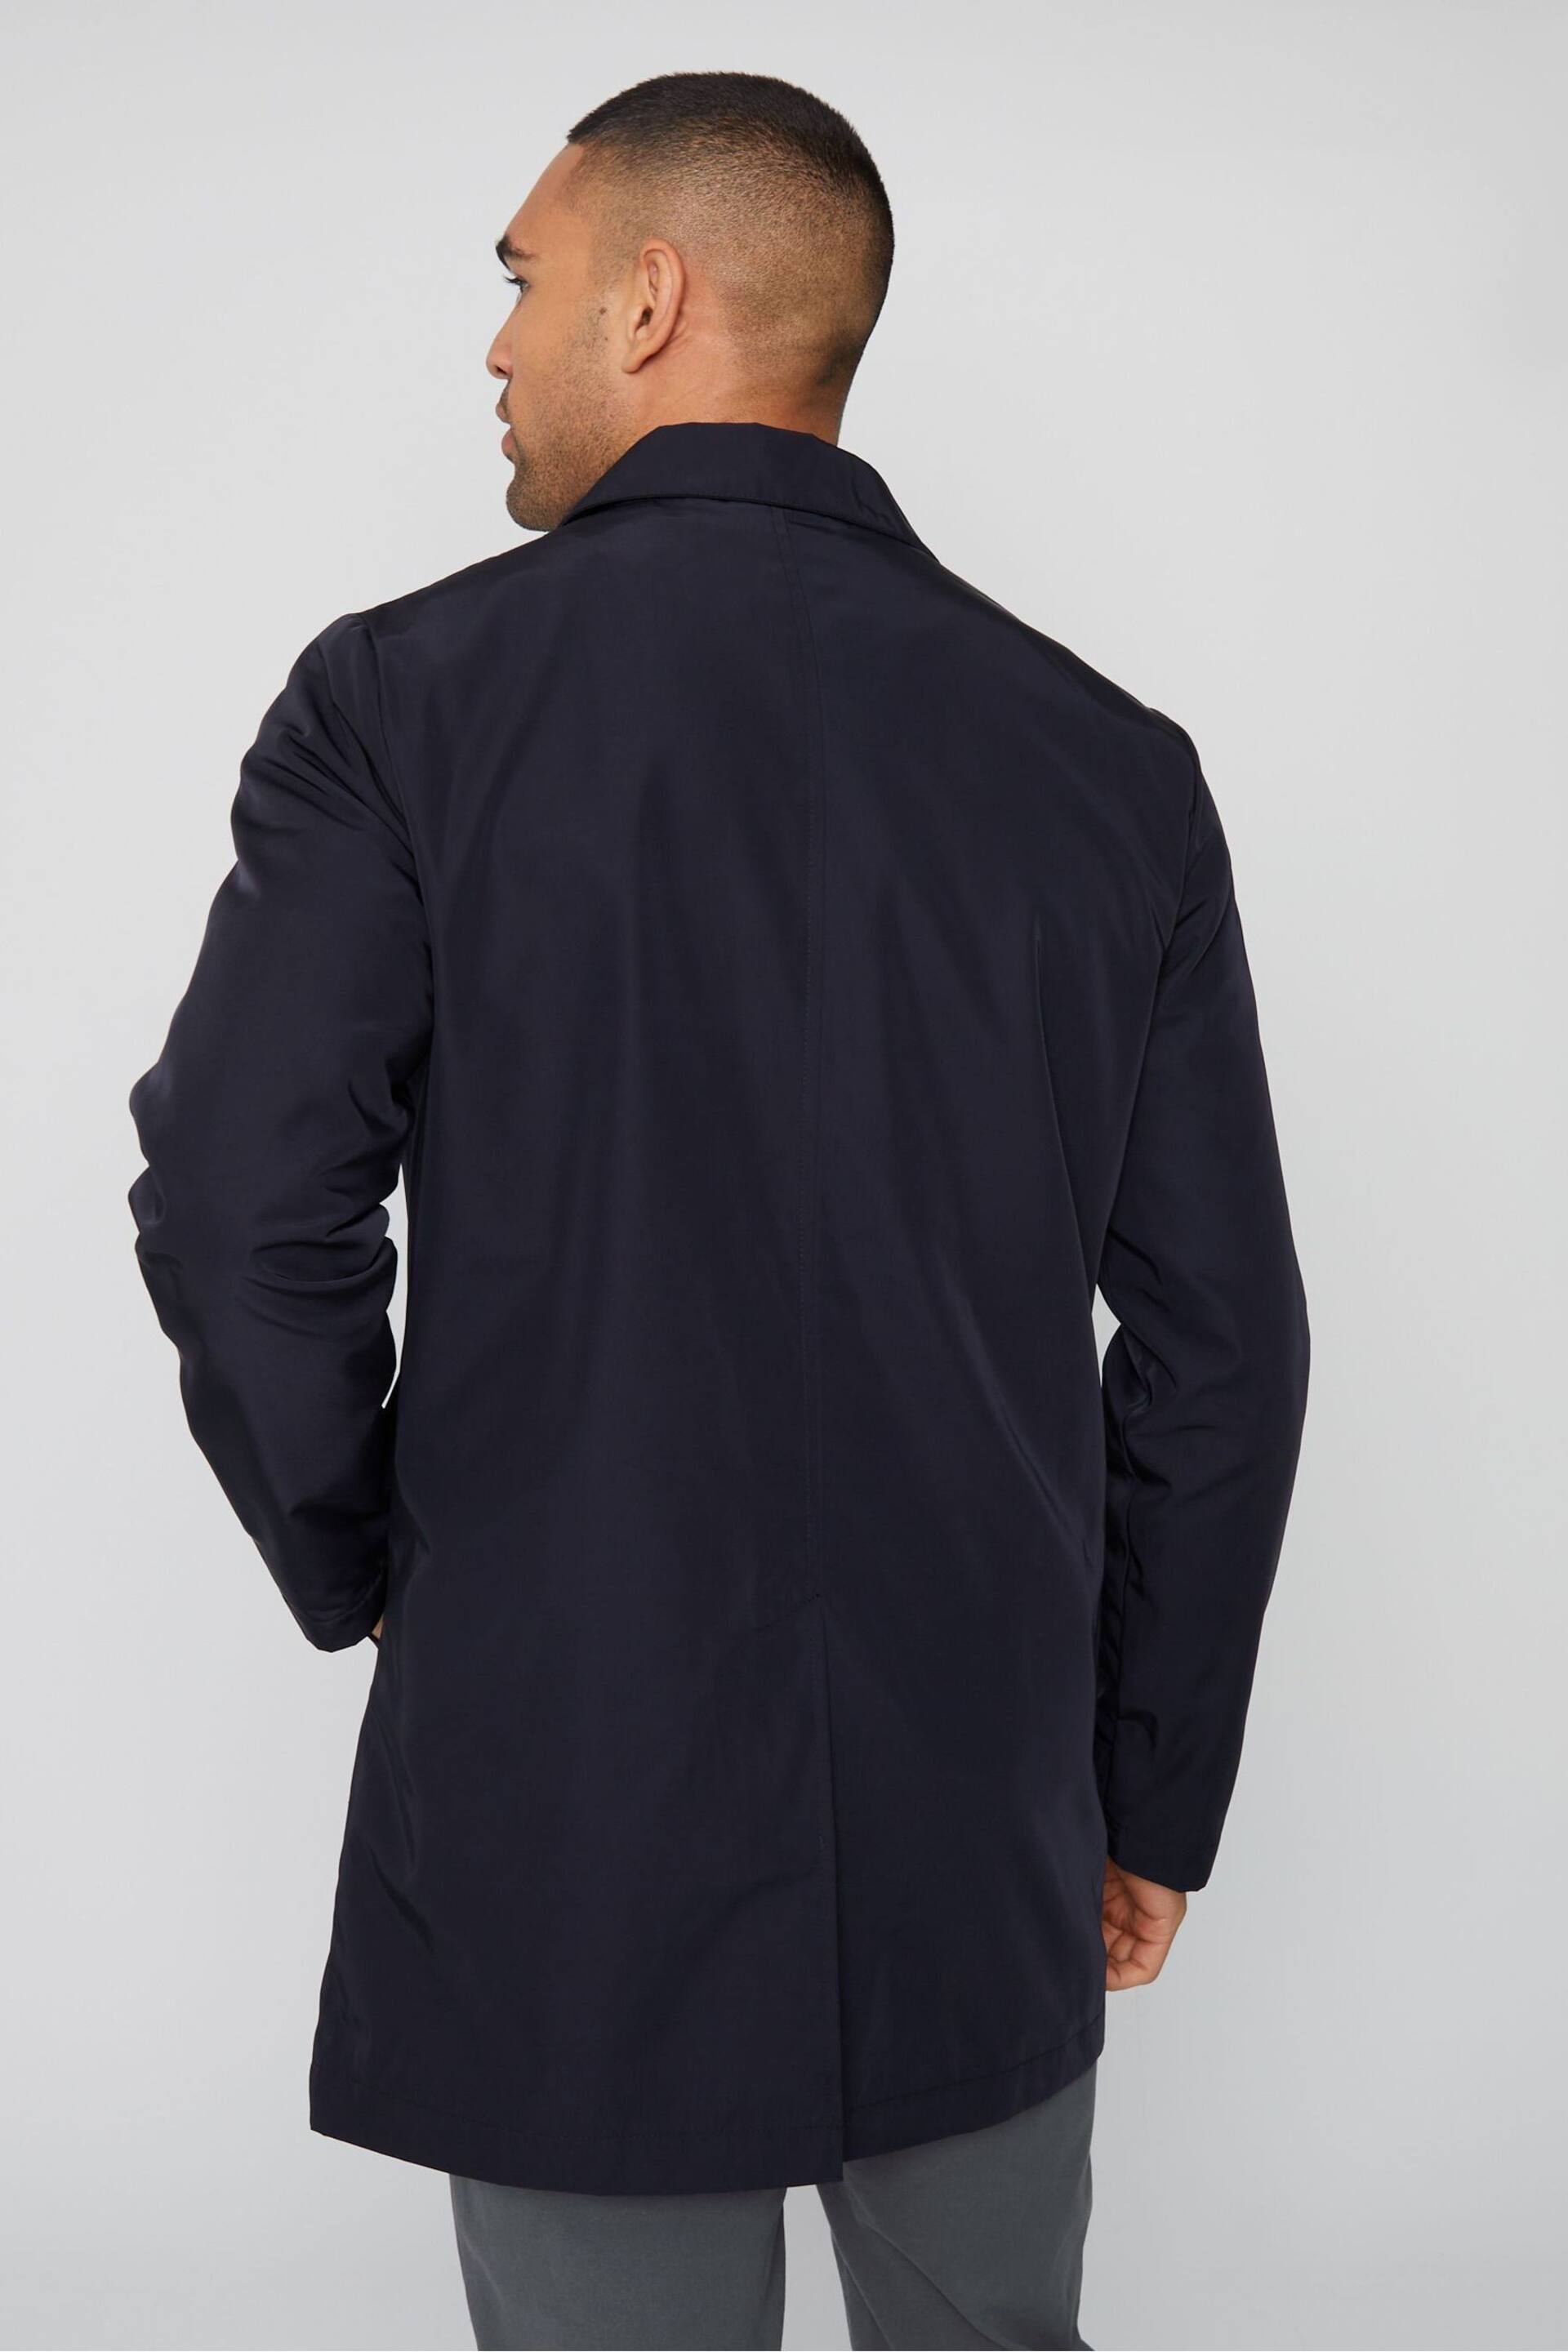 Threadbare Navy Luxe Showerproof Zip Up Collared Jacket - Image 2 of 4